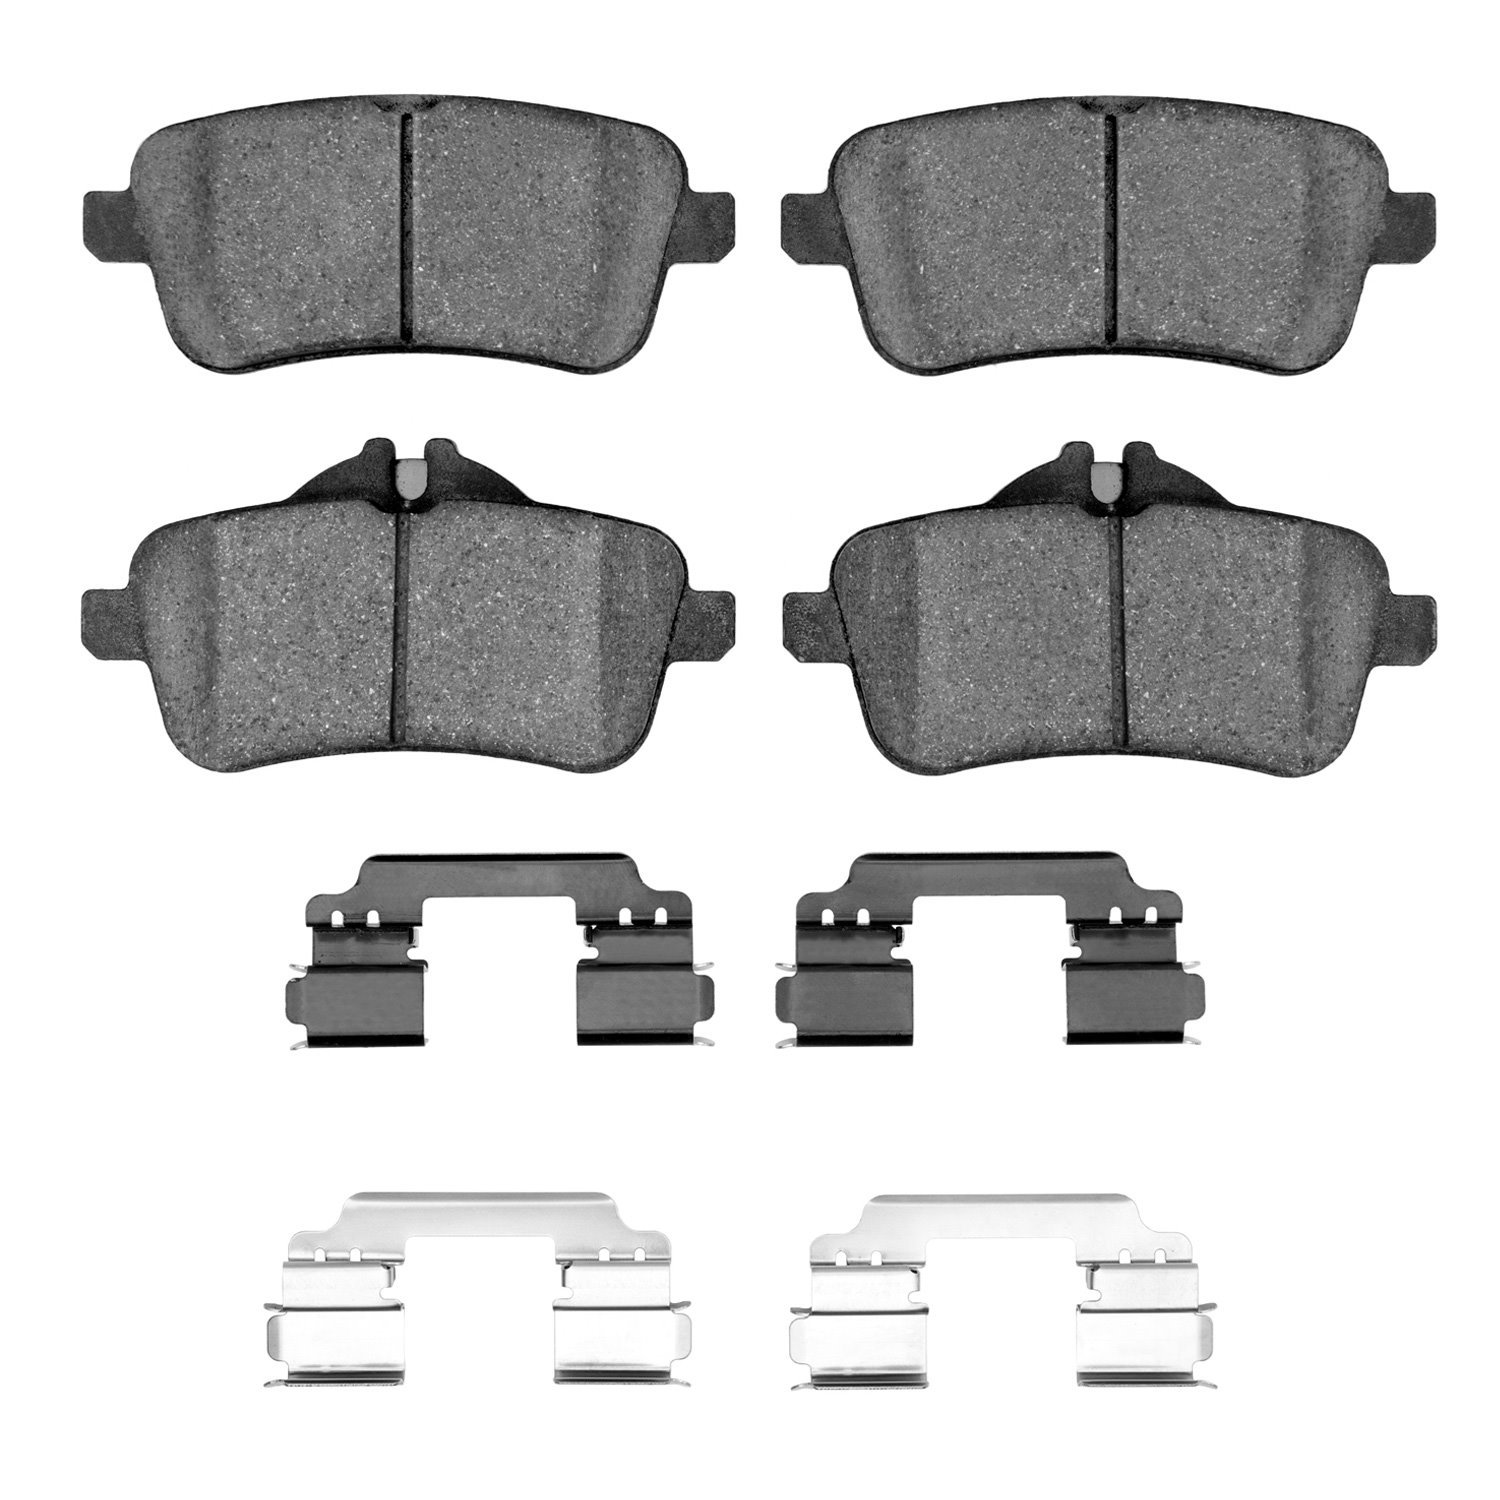 1311-1630-01 3000-Series Semi-Metallic Brake Pads & Hardware Kit, 2012-2020 Mercedes-Benz, Position: Rear